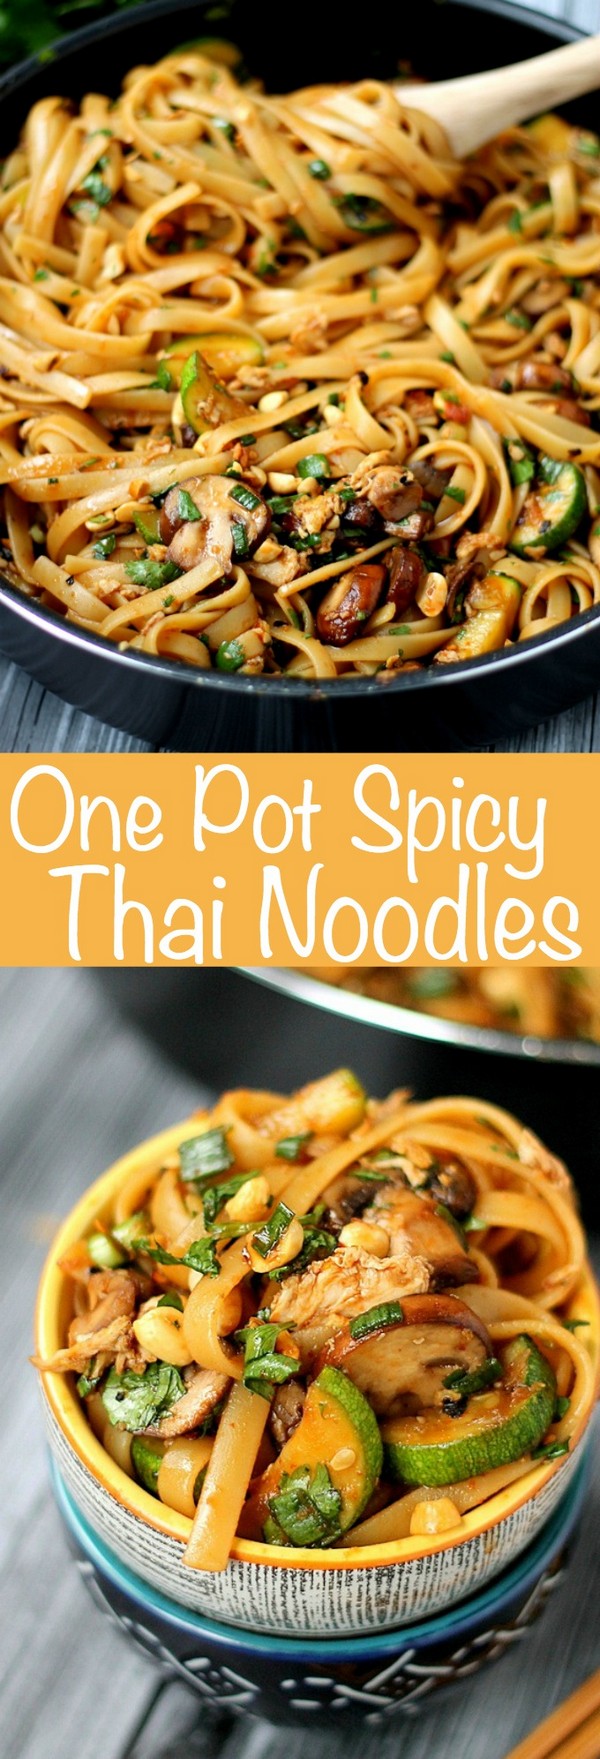 One-Pot Spicy Thai Noodles